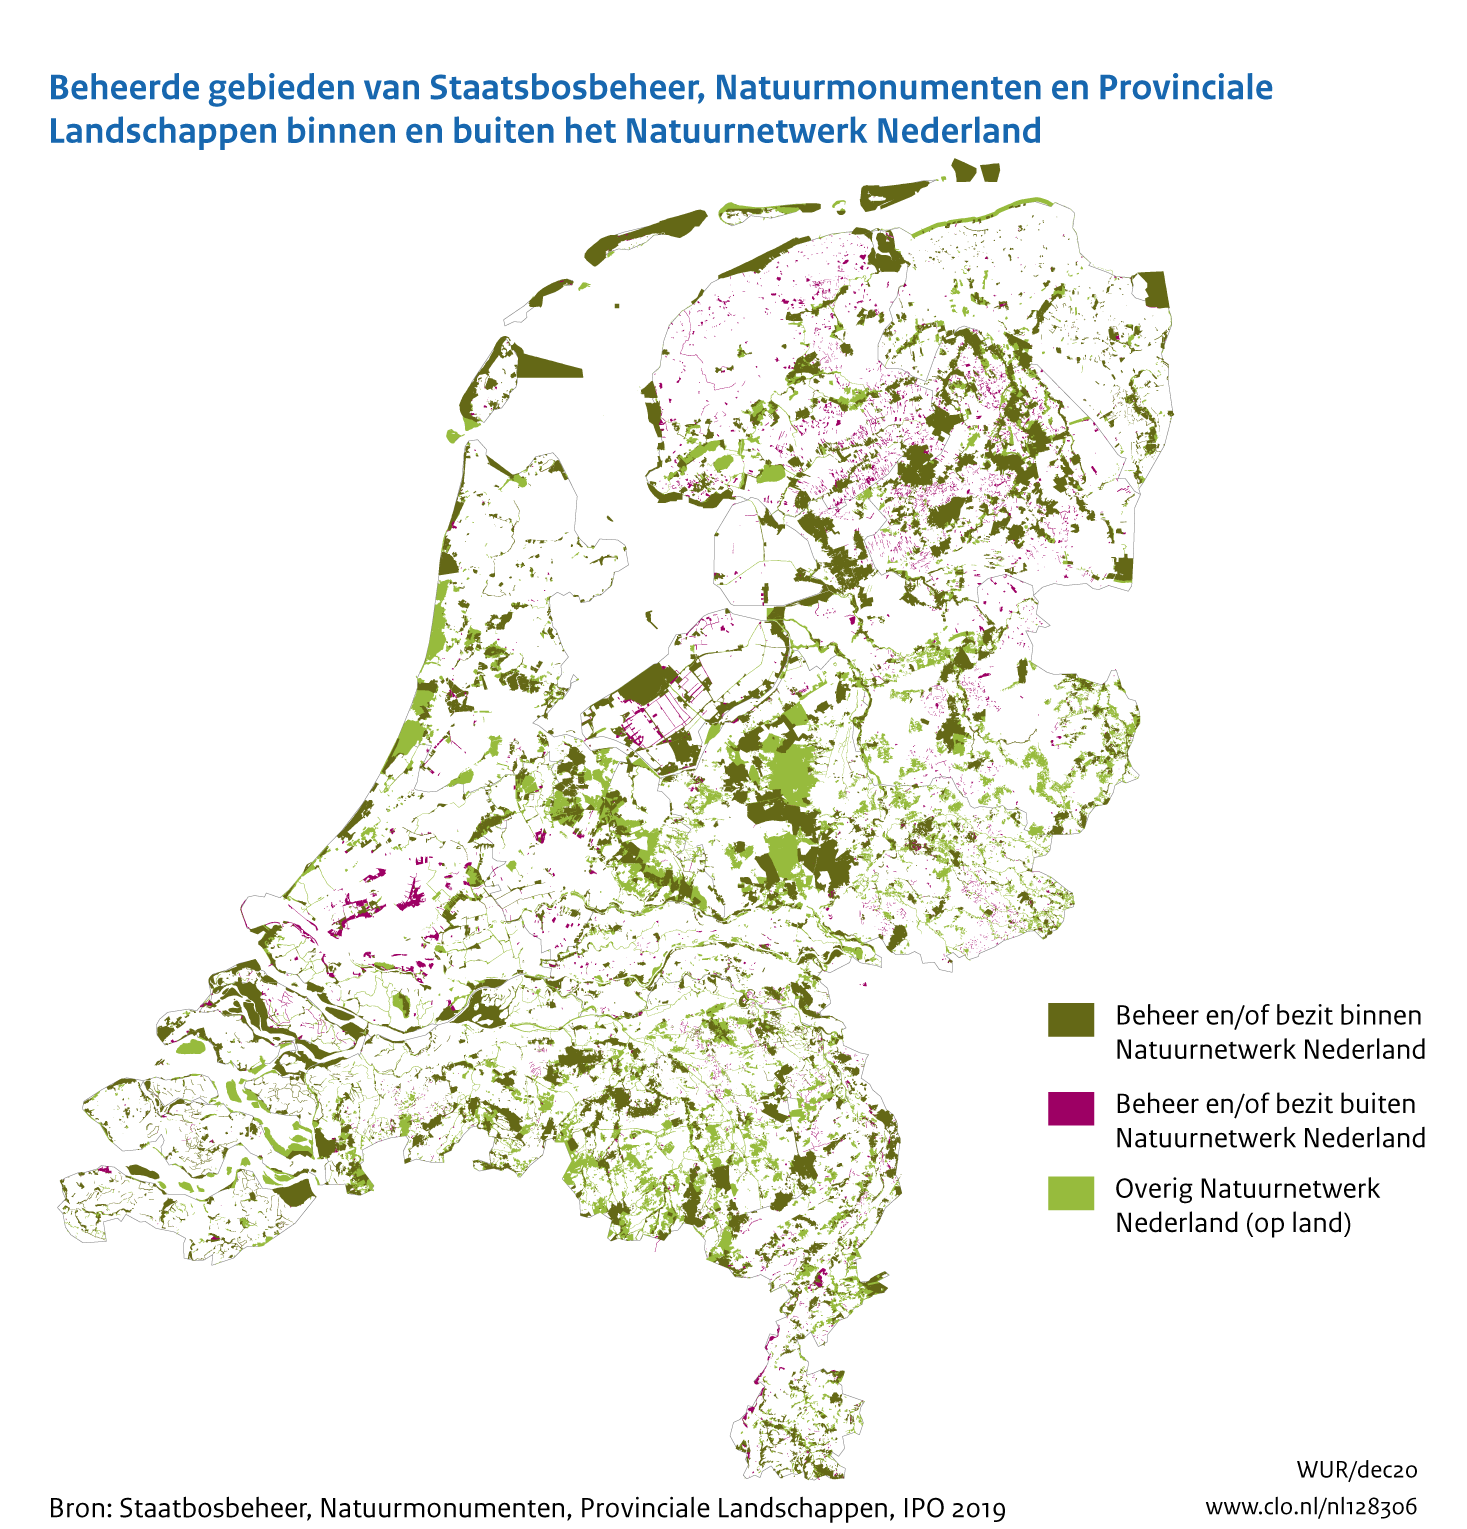 Figuur Kaart gebieden terreinbeherende organisaties in Nederland. In de rest van de tekst wordt deze figuur uitgebreider uitgelegd.